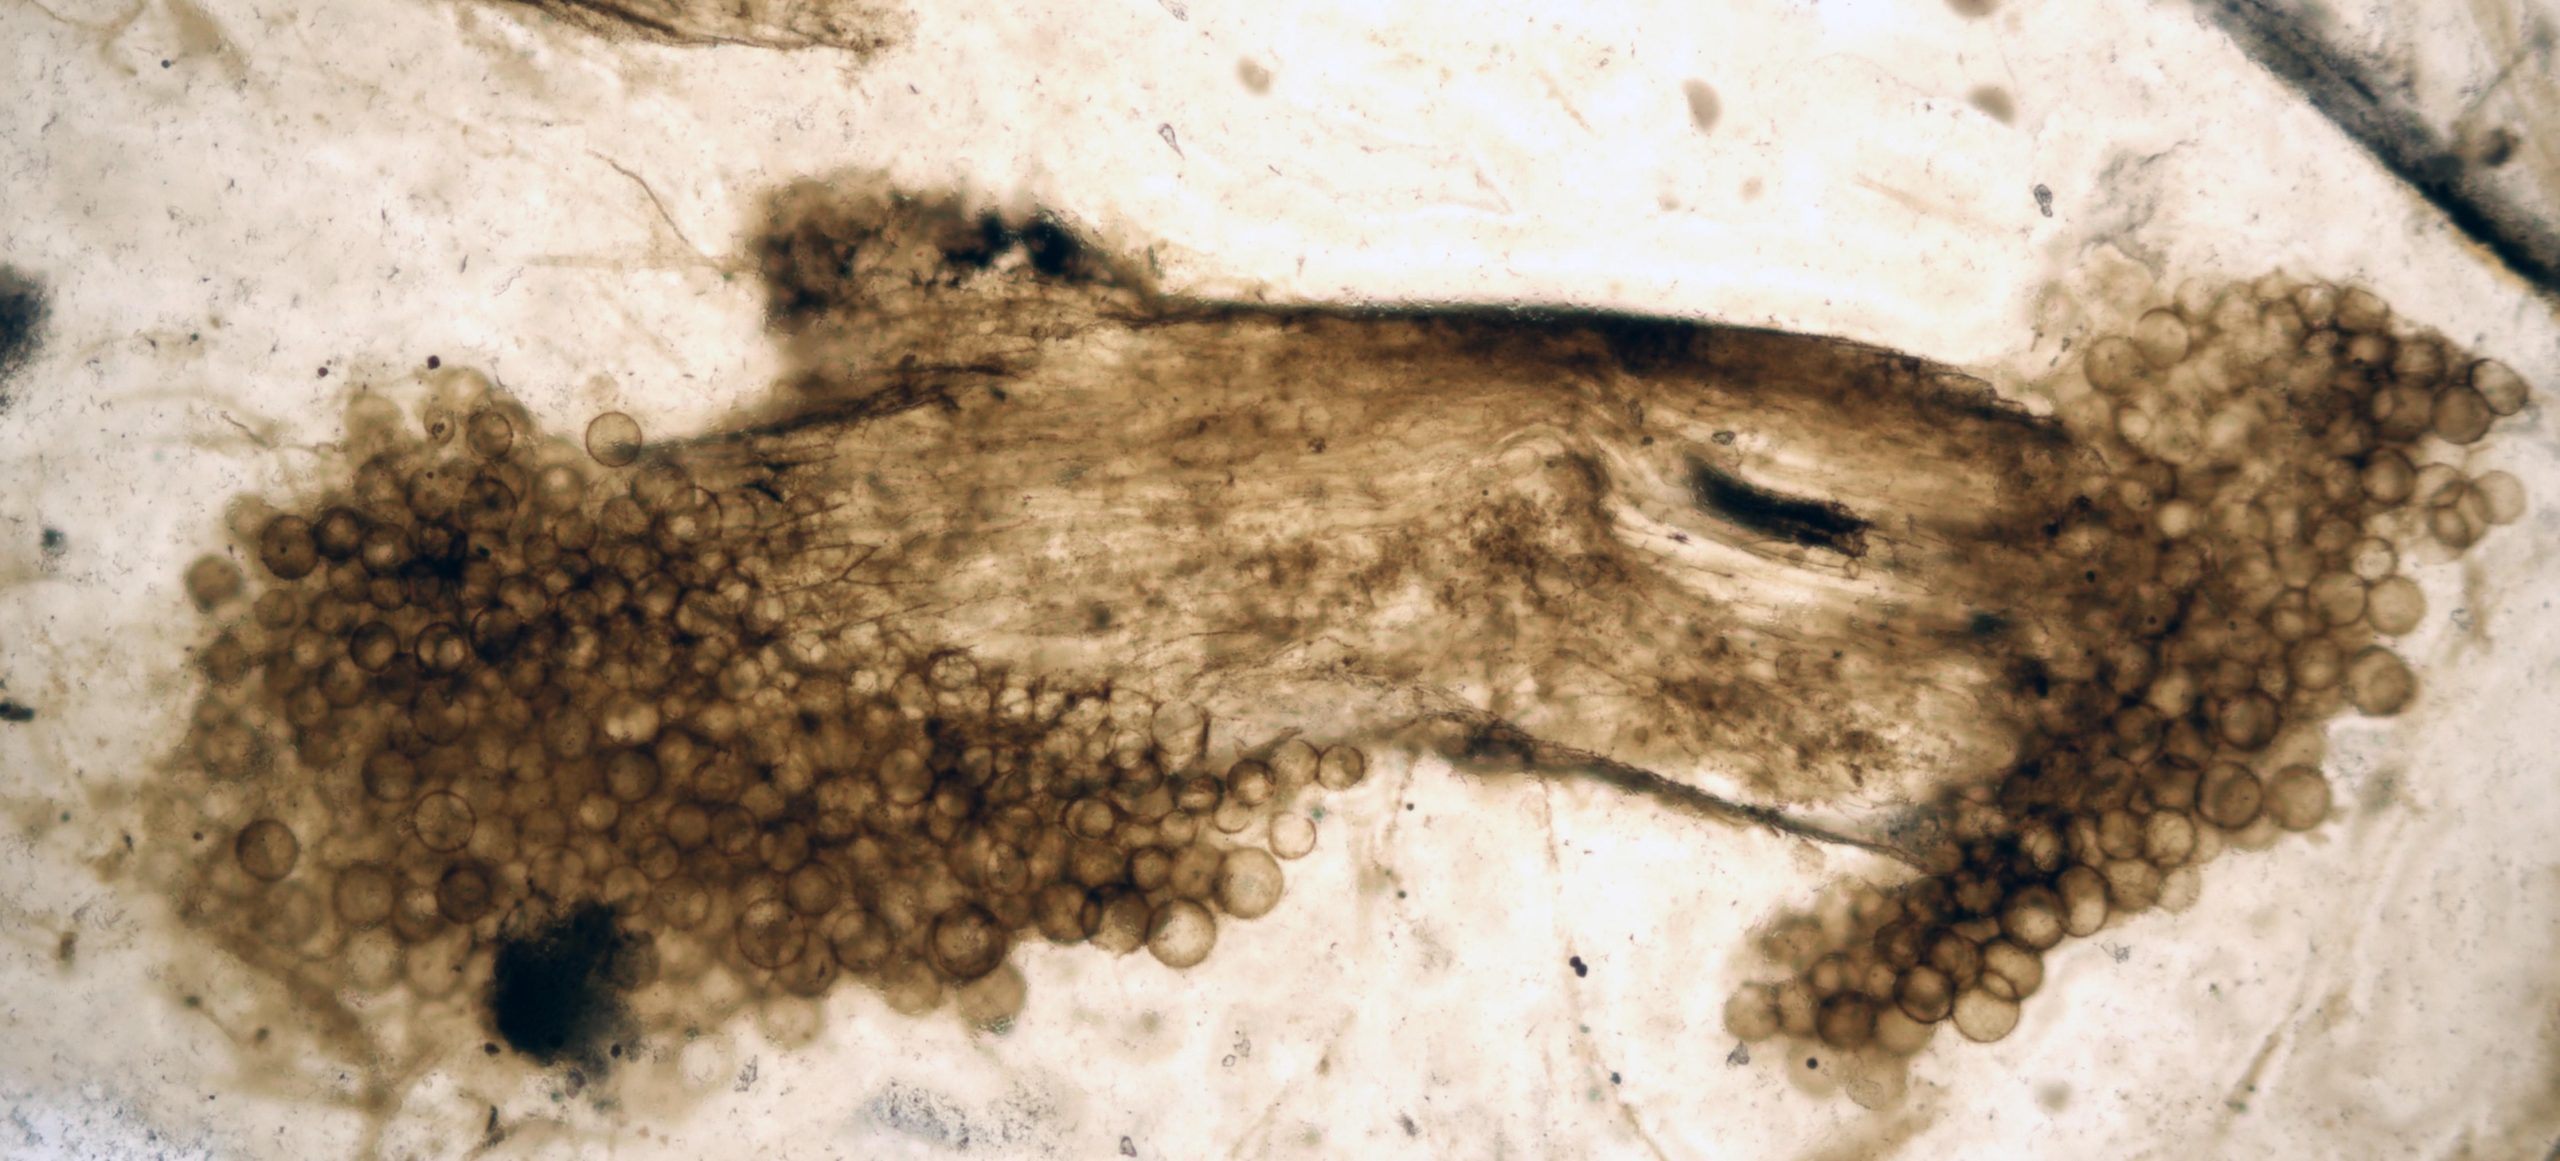 400 Millionen Jahre alte Fossilien offenbaren frühes Leben